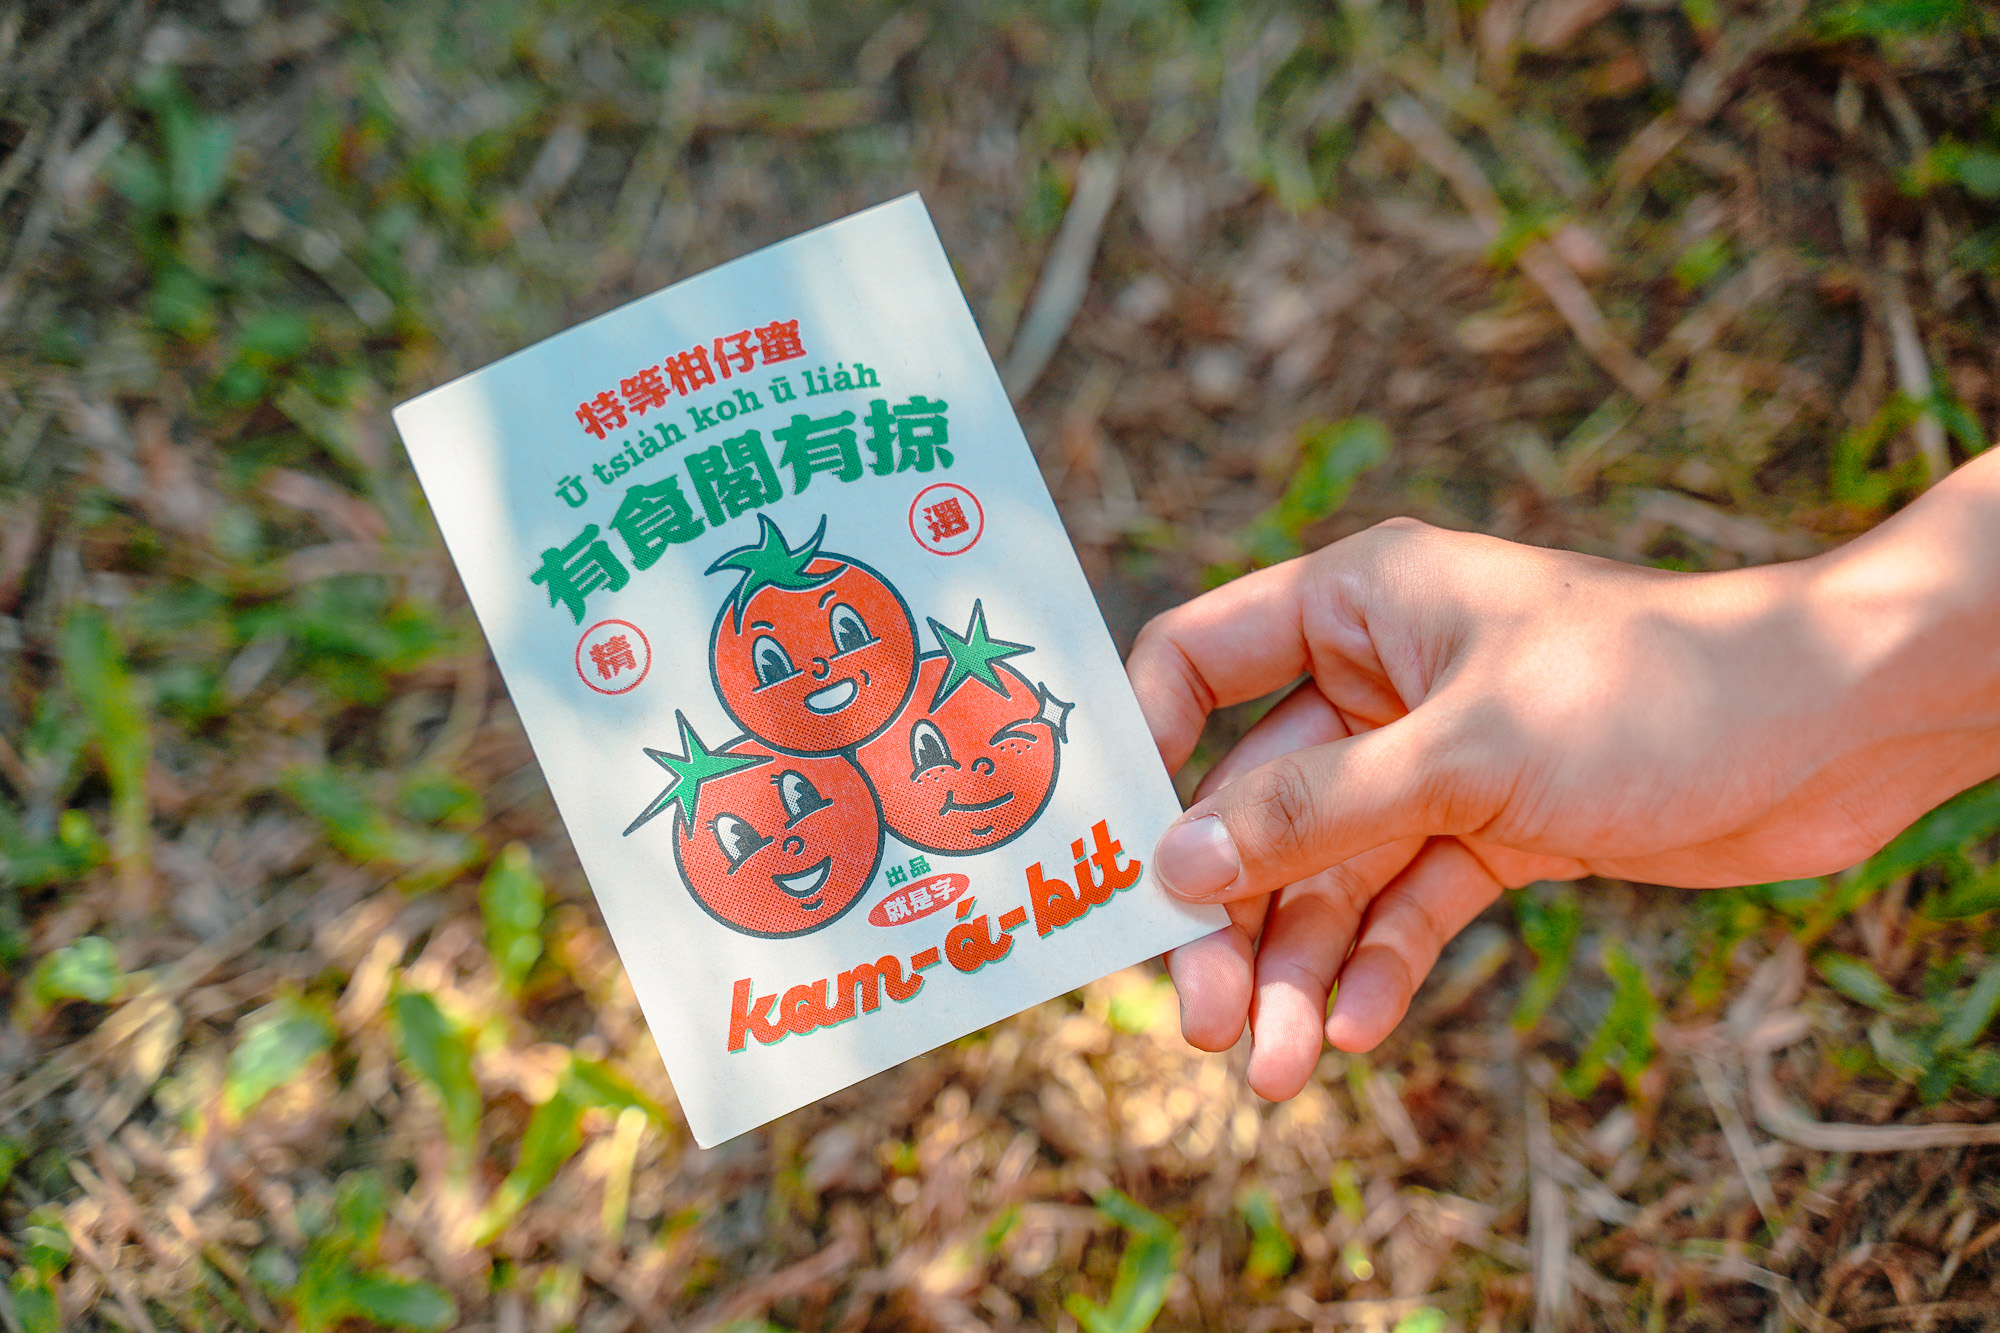 justfont 的伴手禮小卡，黃子欽指出柑仔蜜偏向日本系統，下方的番茄圖像則有美式風味